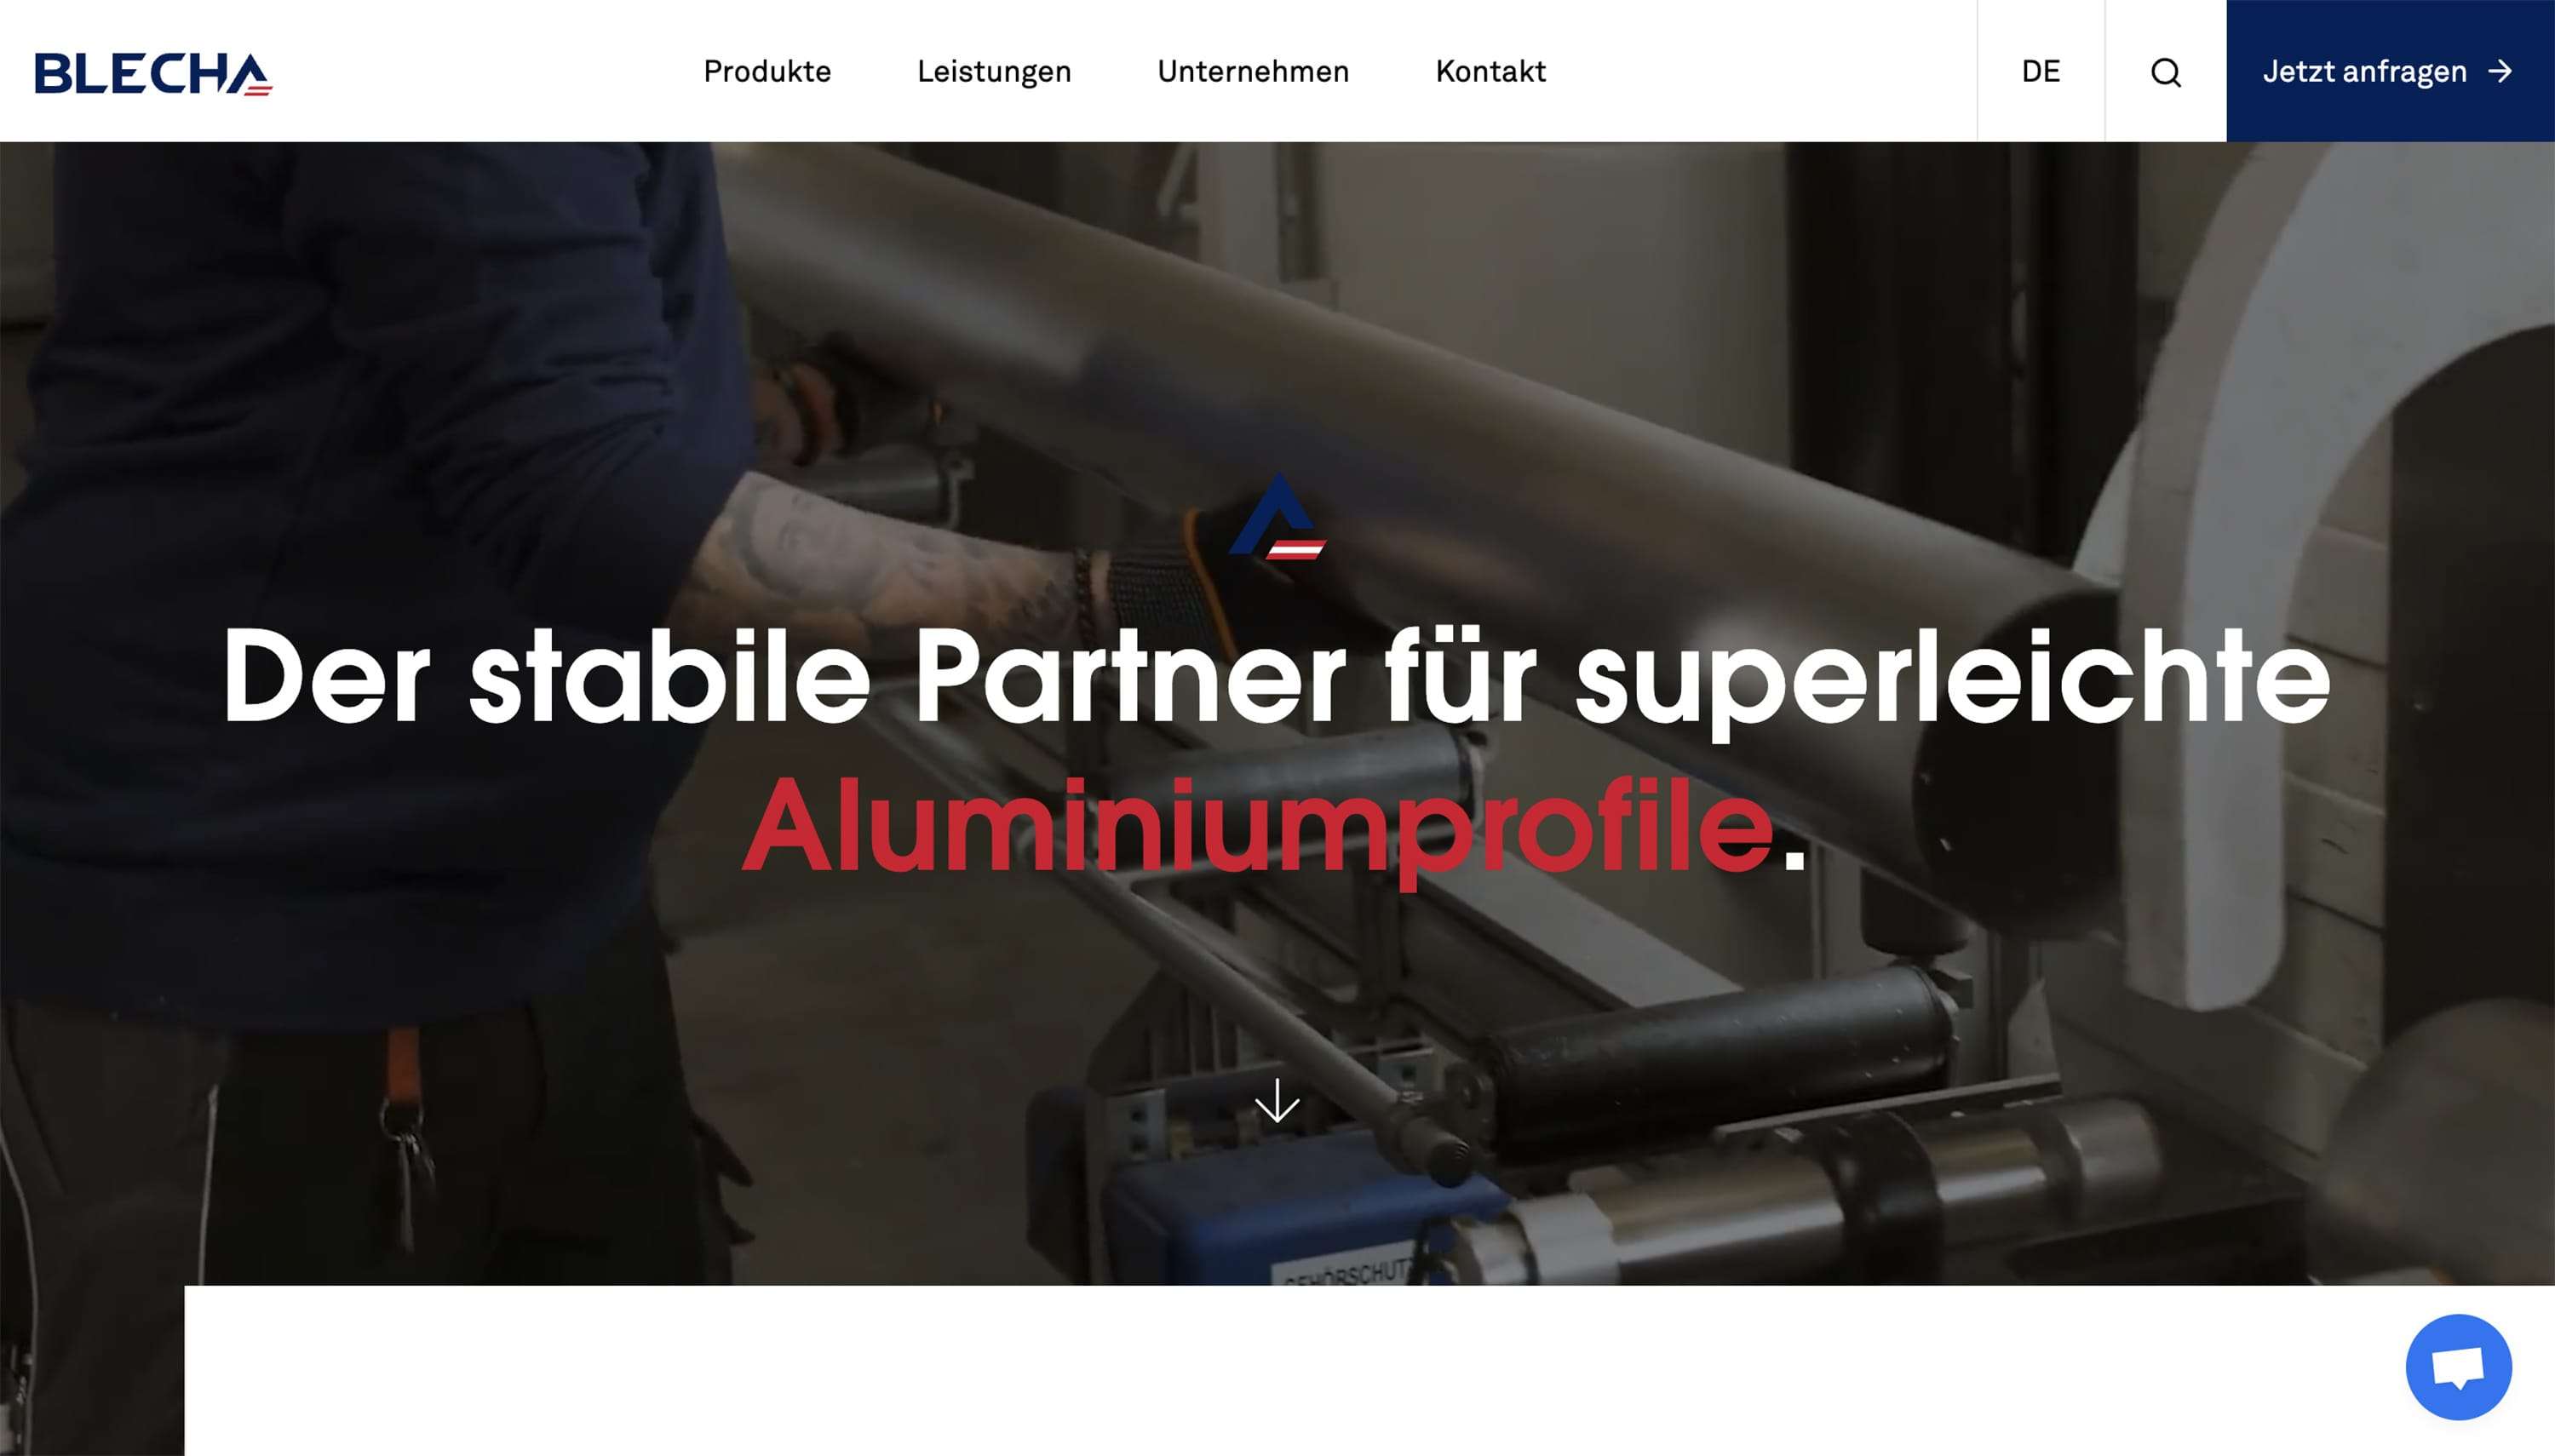 Der stabile Partner für superleichte Aluminiumprofile.